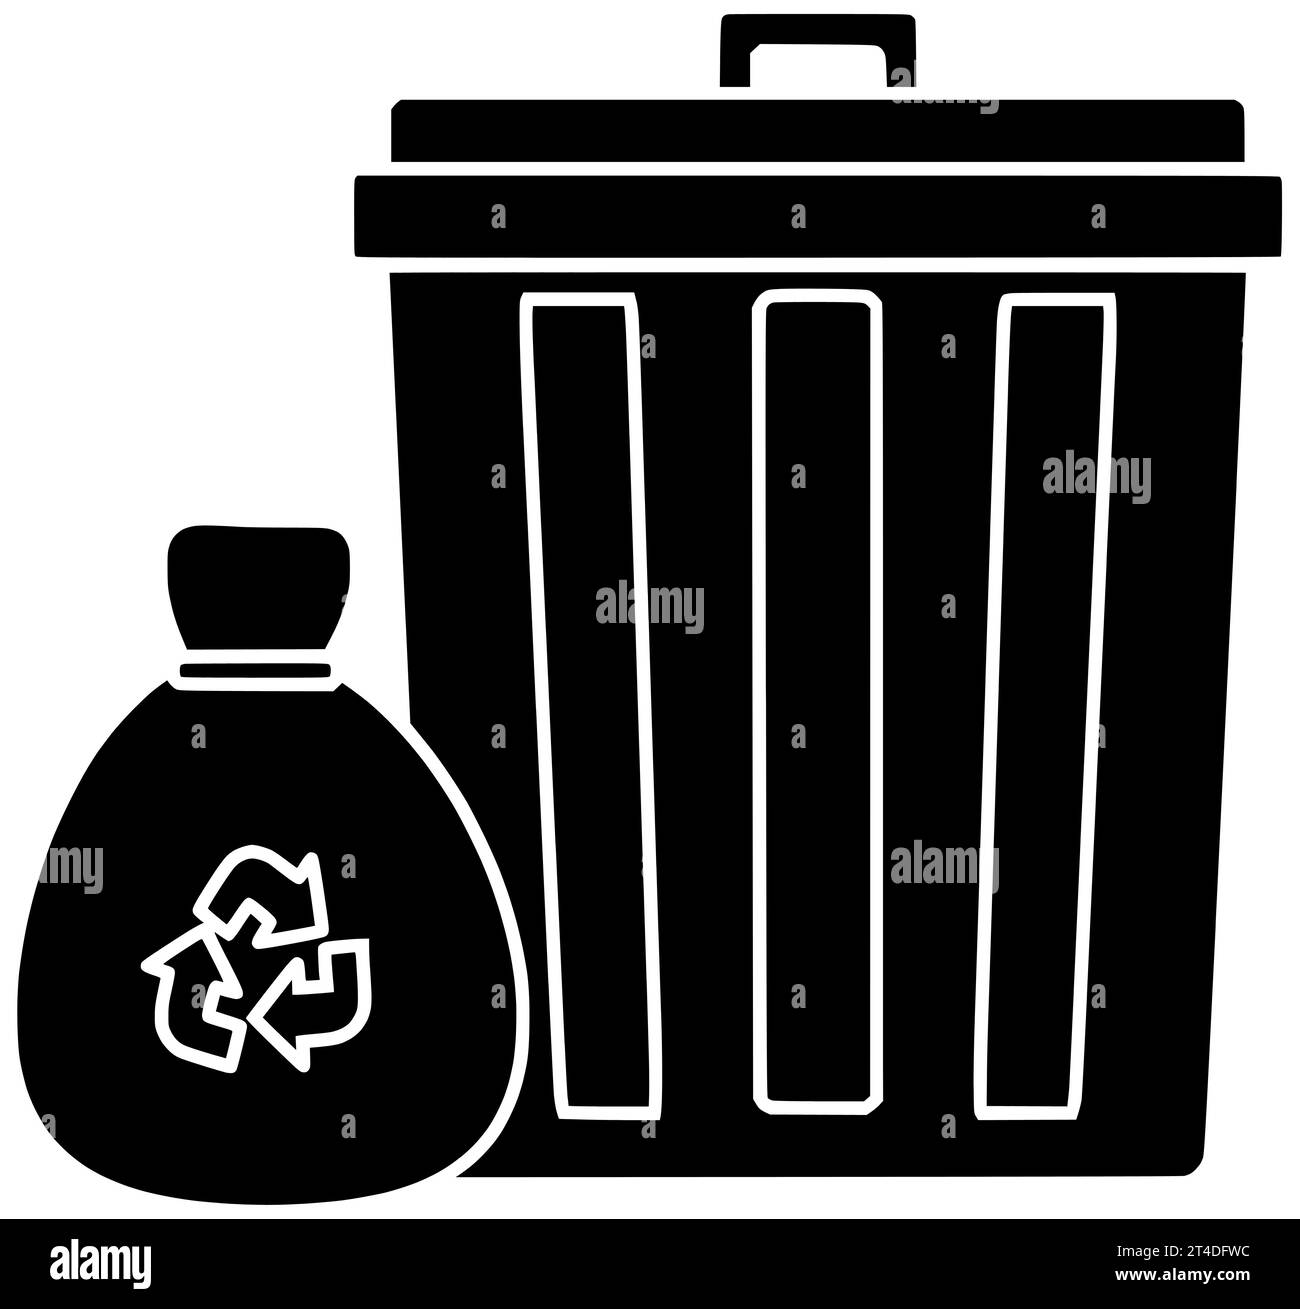 poubelle noir silhouette poubelle illustration poubelle icône poubelle logo plastique sac recycler écologie nettoyer bac de recyclage poubelle environnement déchets pollution contenir Banque D'Images